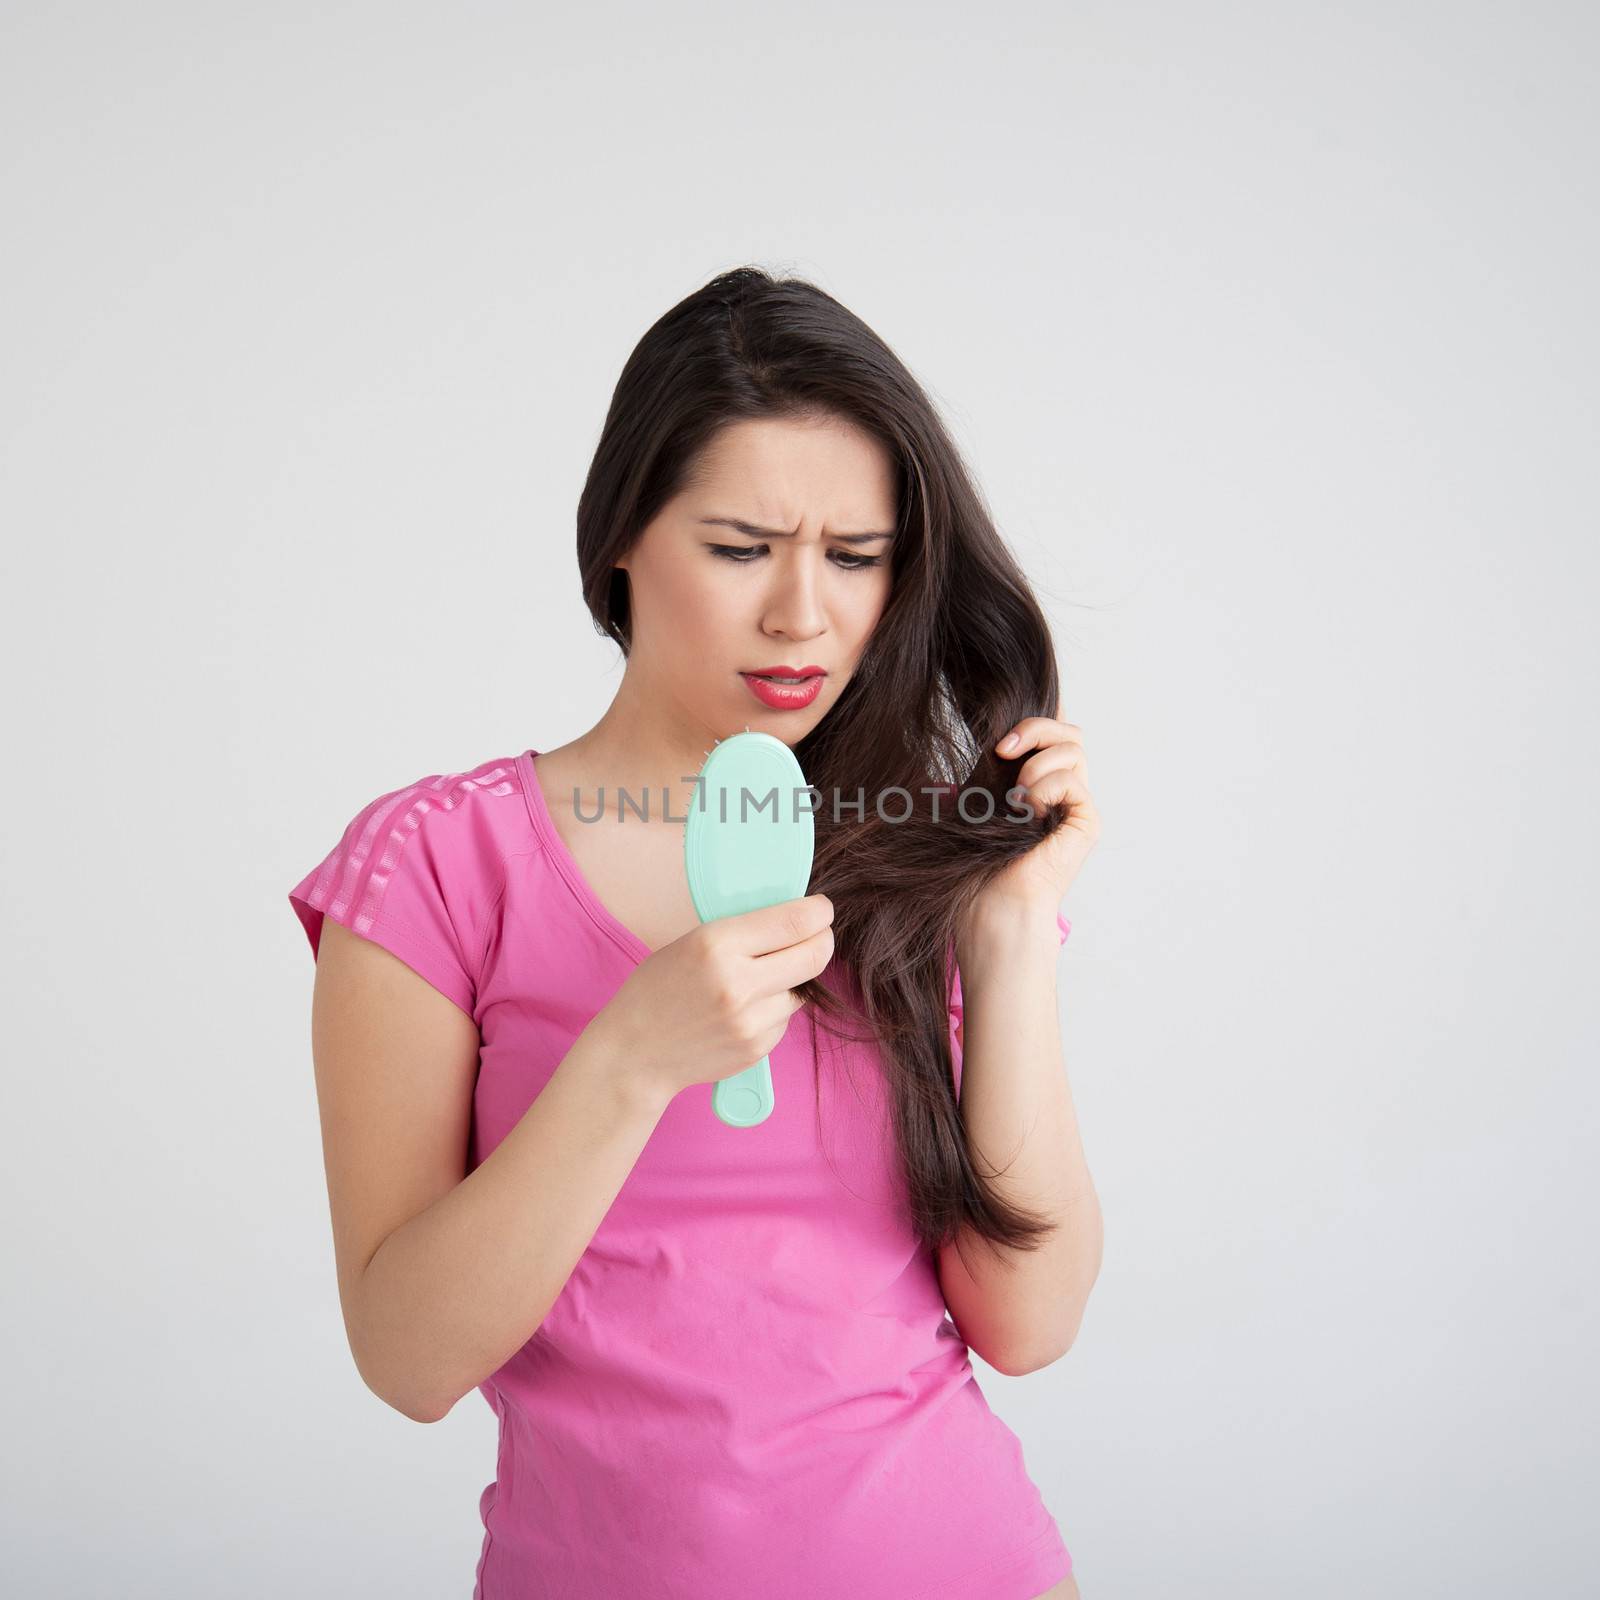 shocked woman losing hair on hairbrush